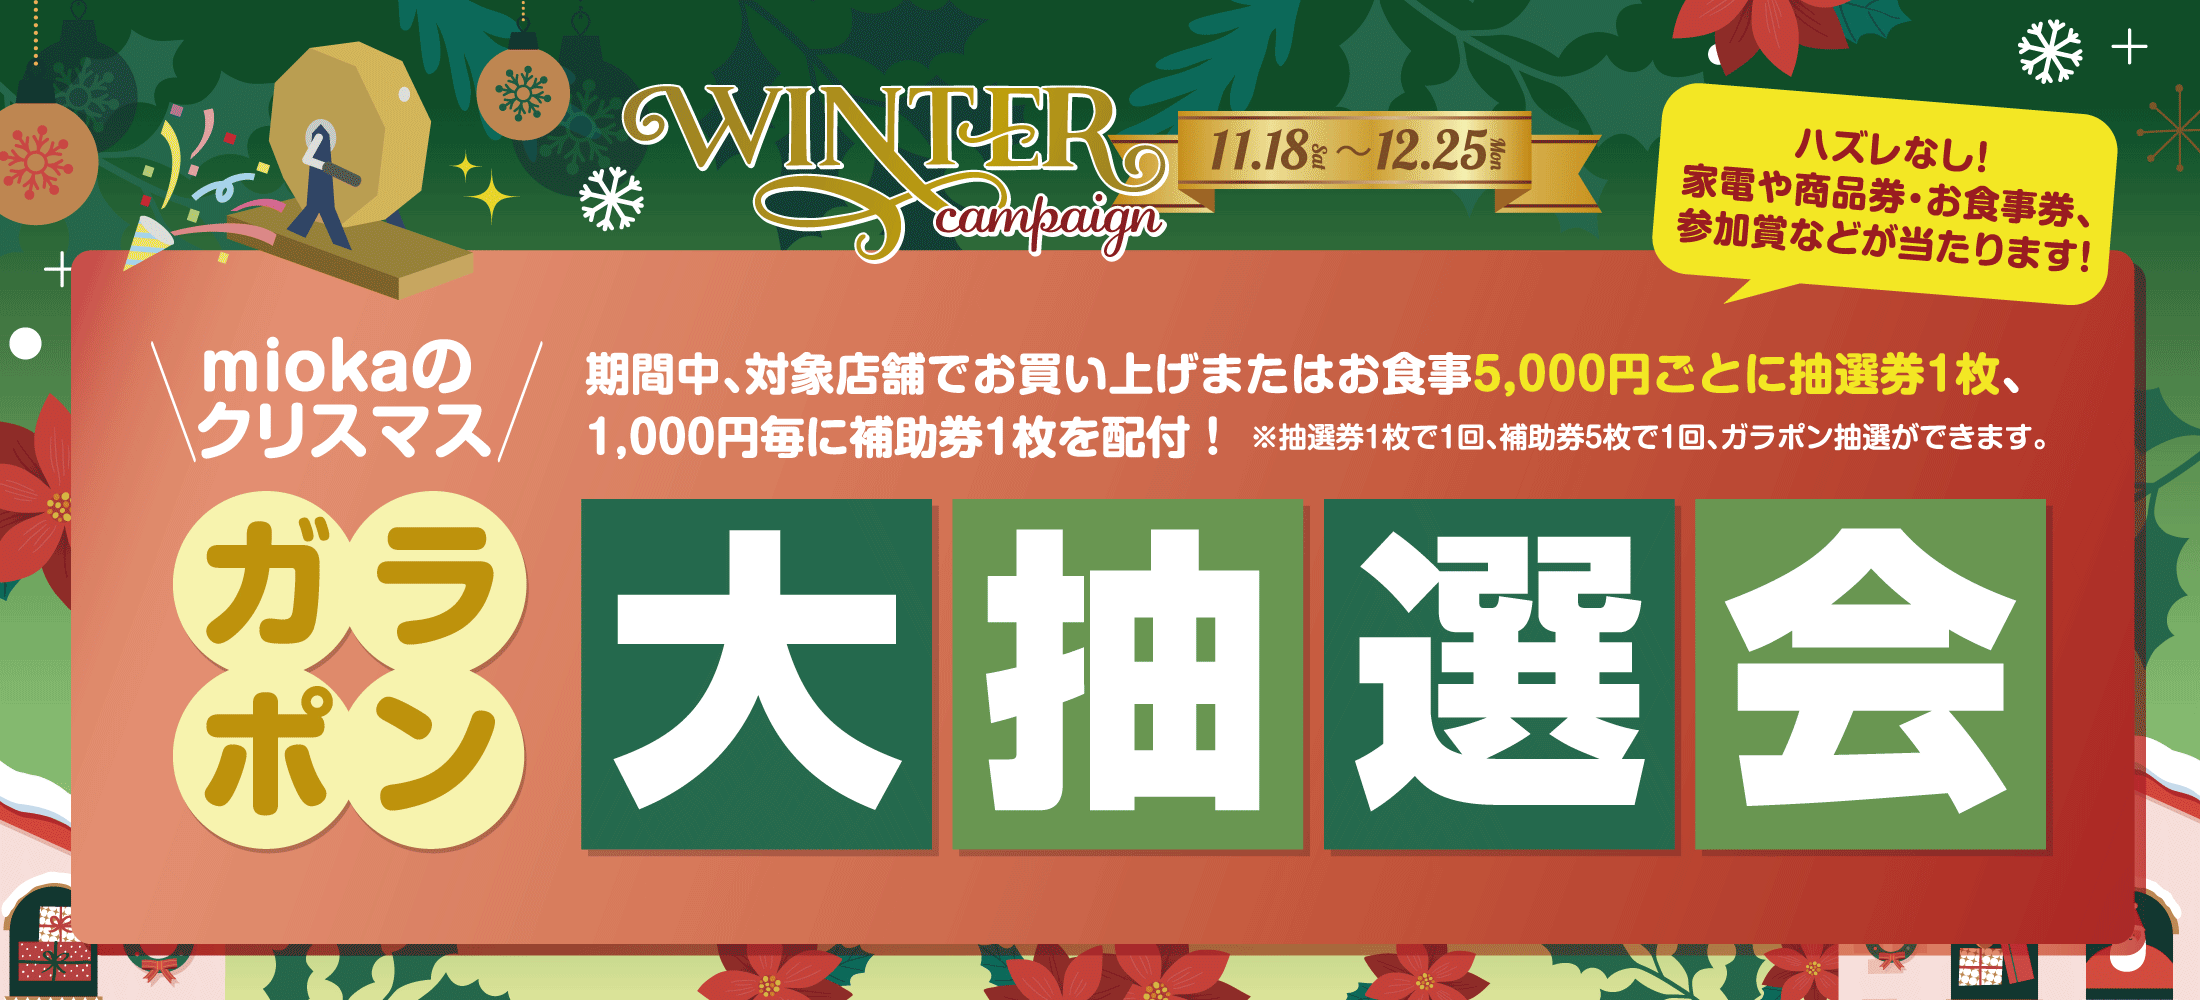 ウィンターキャンペーン2023「miokaのクリスマスガラポン大抽選会」